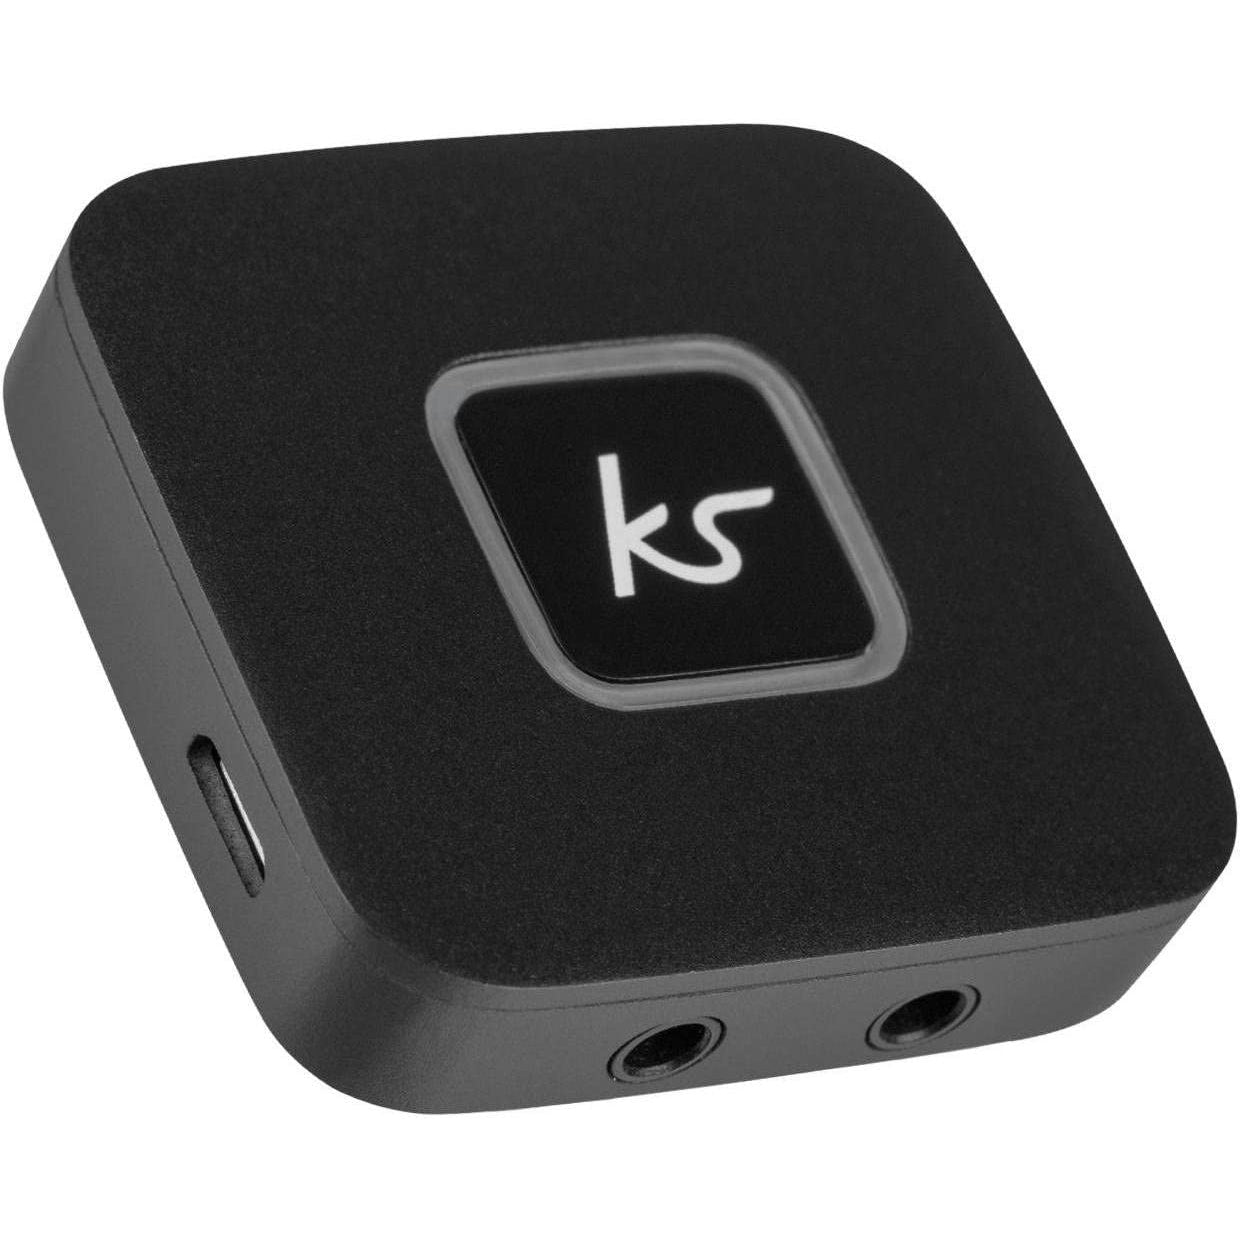 KitSound Bluetooth Wireless Audio Splitter for Wireless and Wired Headphones, Bluetooth Headphone Splitter - Black